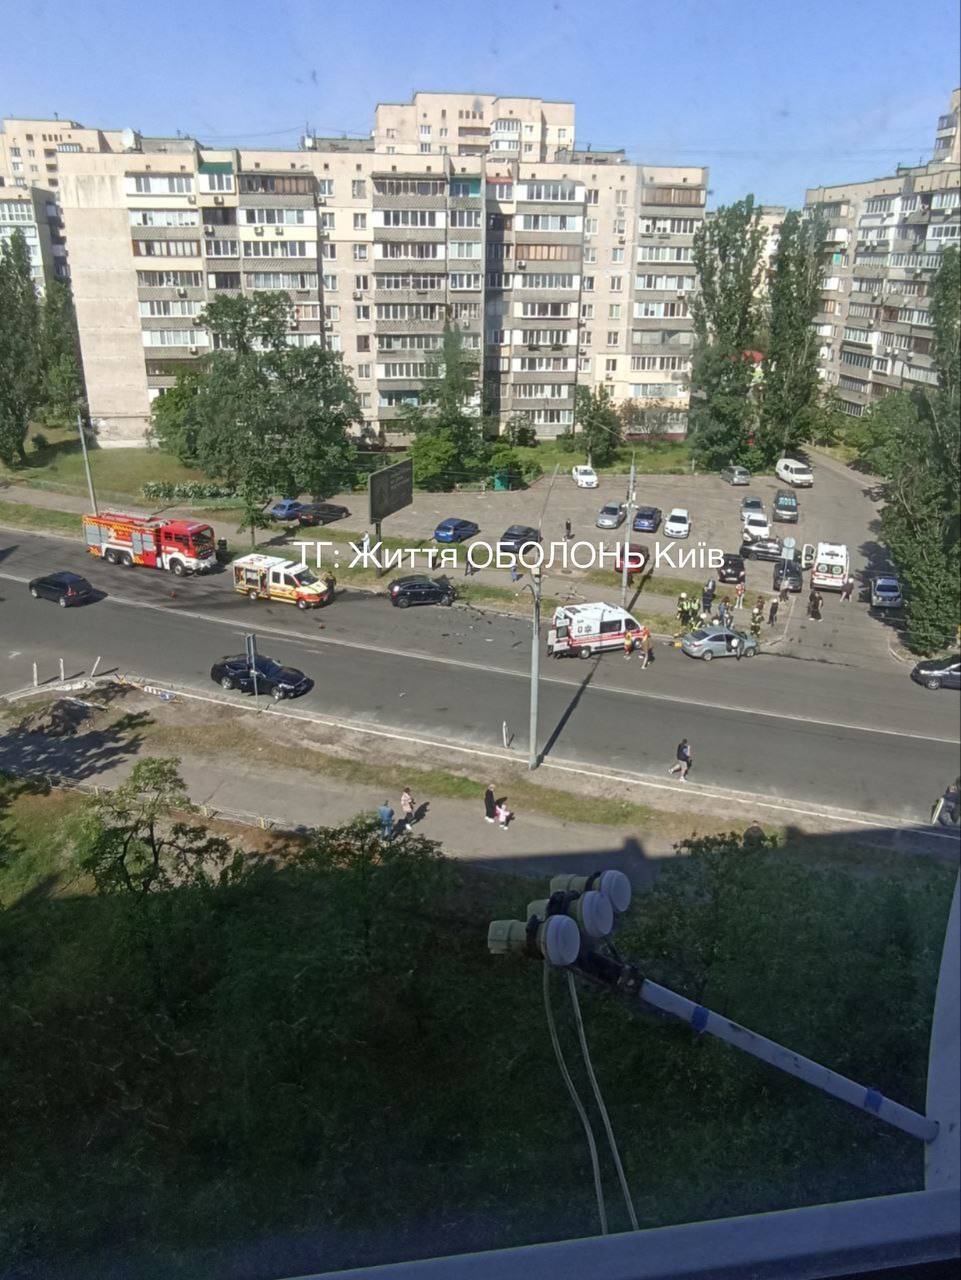 В Киеве на Оболони произошла авария с участием двух легковушек: одного из водителей зажало в салоне авто. Фото и видео